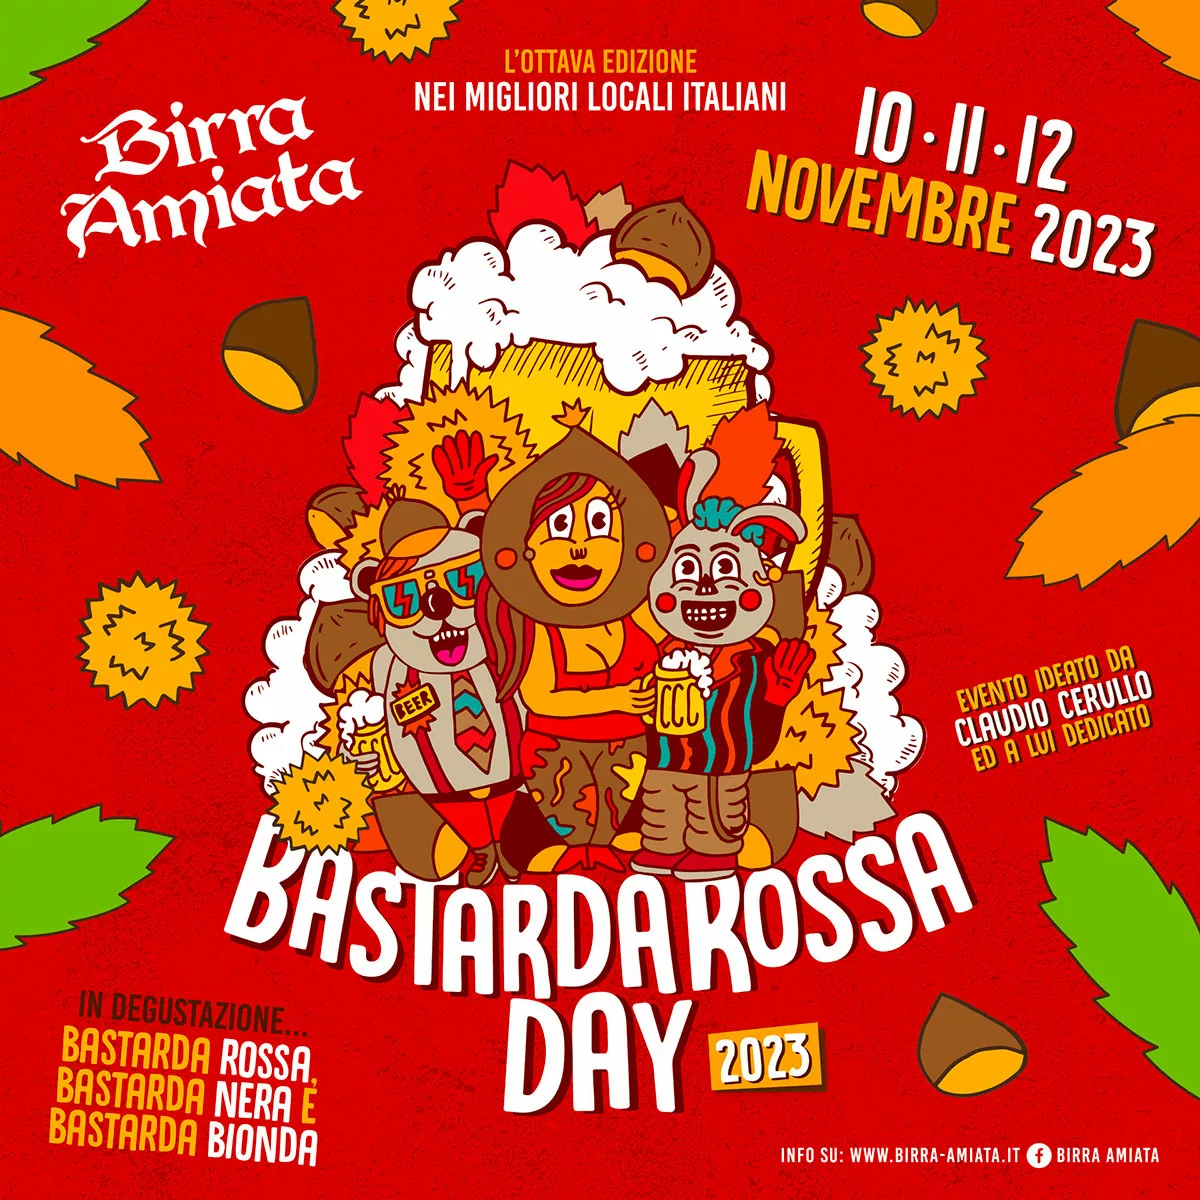 Bastarda Rossa Day 2023 di Birra Amiata